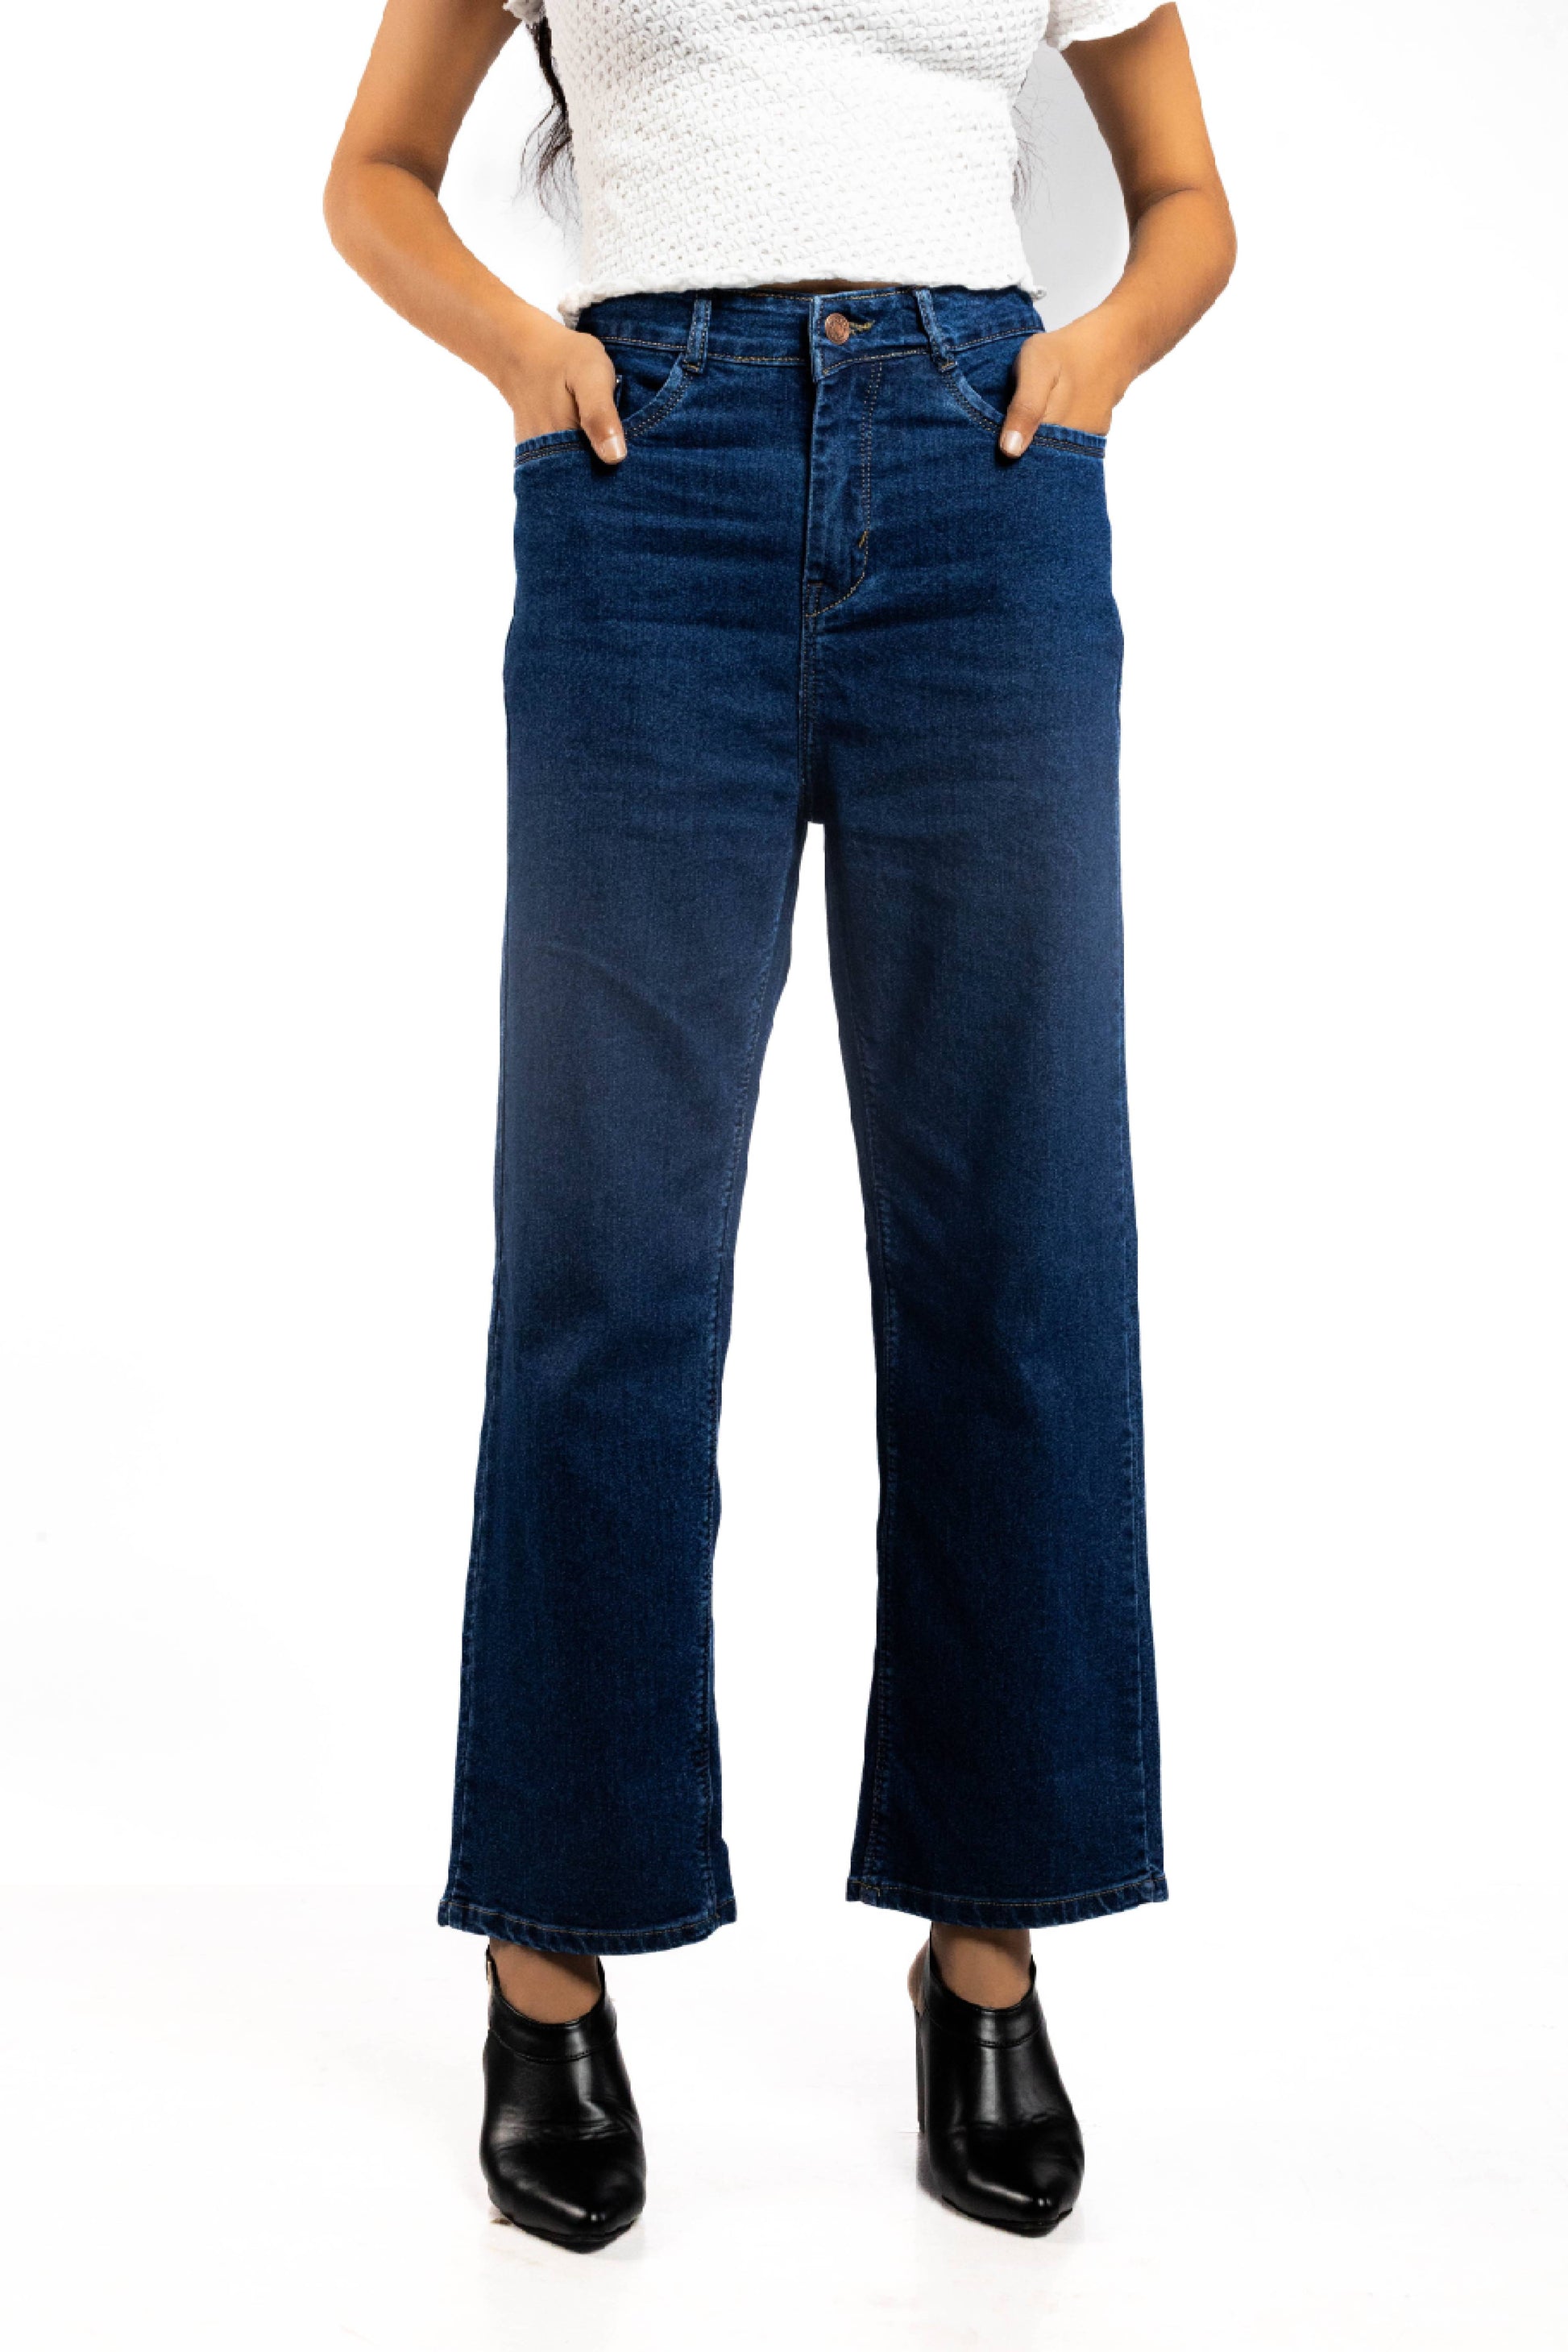 traight cut jeans women's UAE online|stylish jeans for women